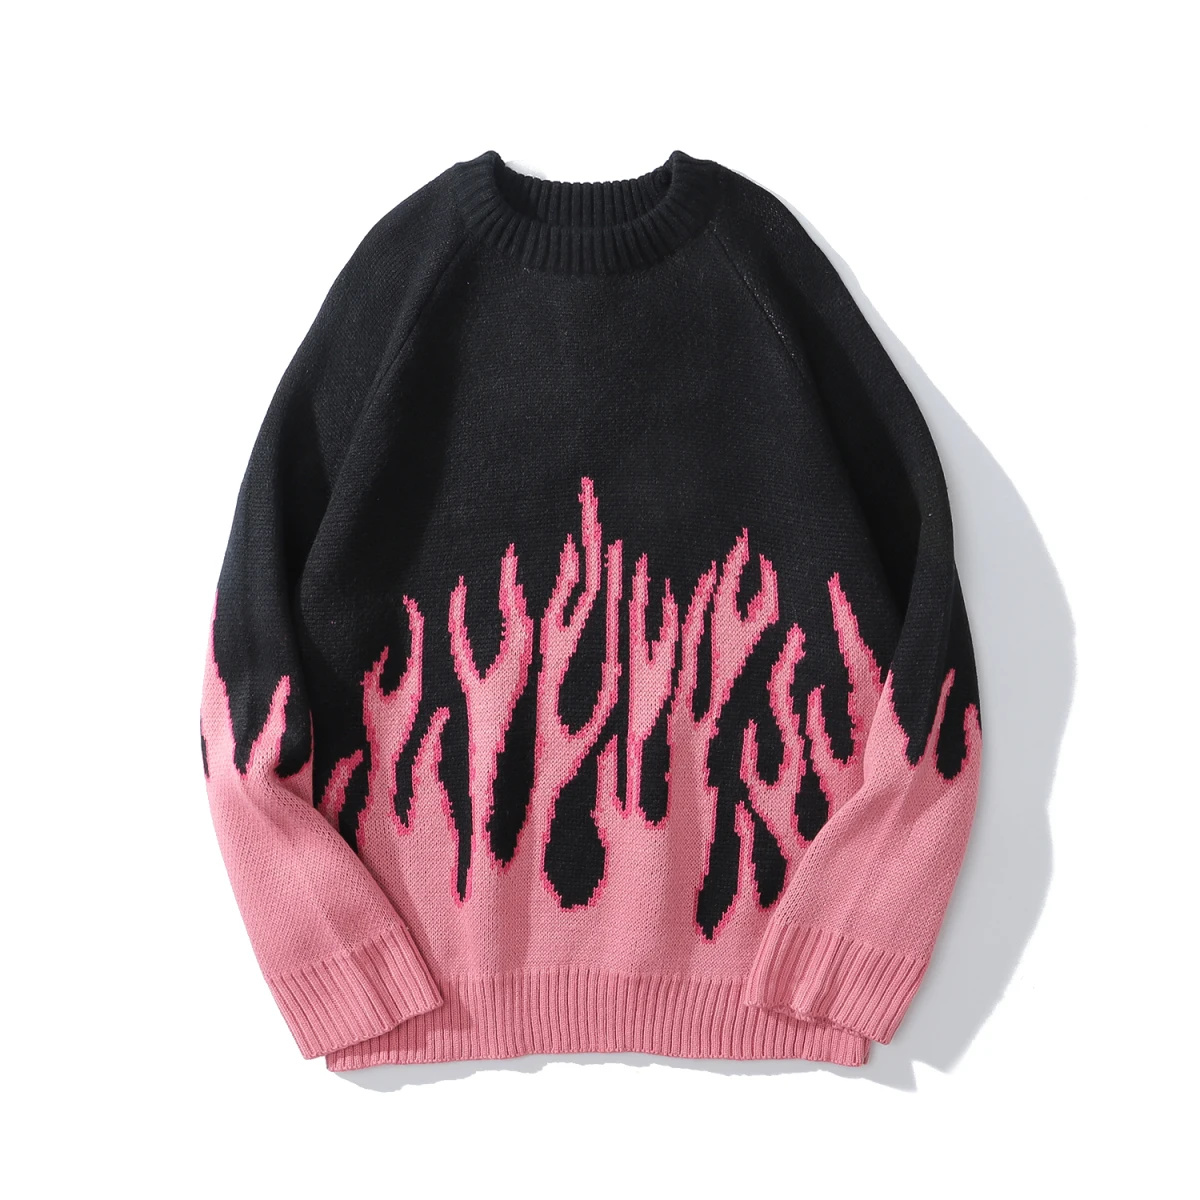 Suéter de llama Vintage para mujer, Jersey de punto estilo Kpop, Harajuku, informal, de gran tamaño, cálido, invierno, 2020